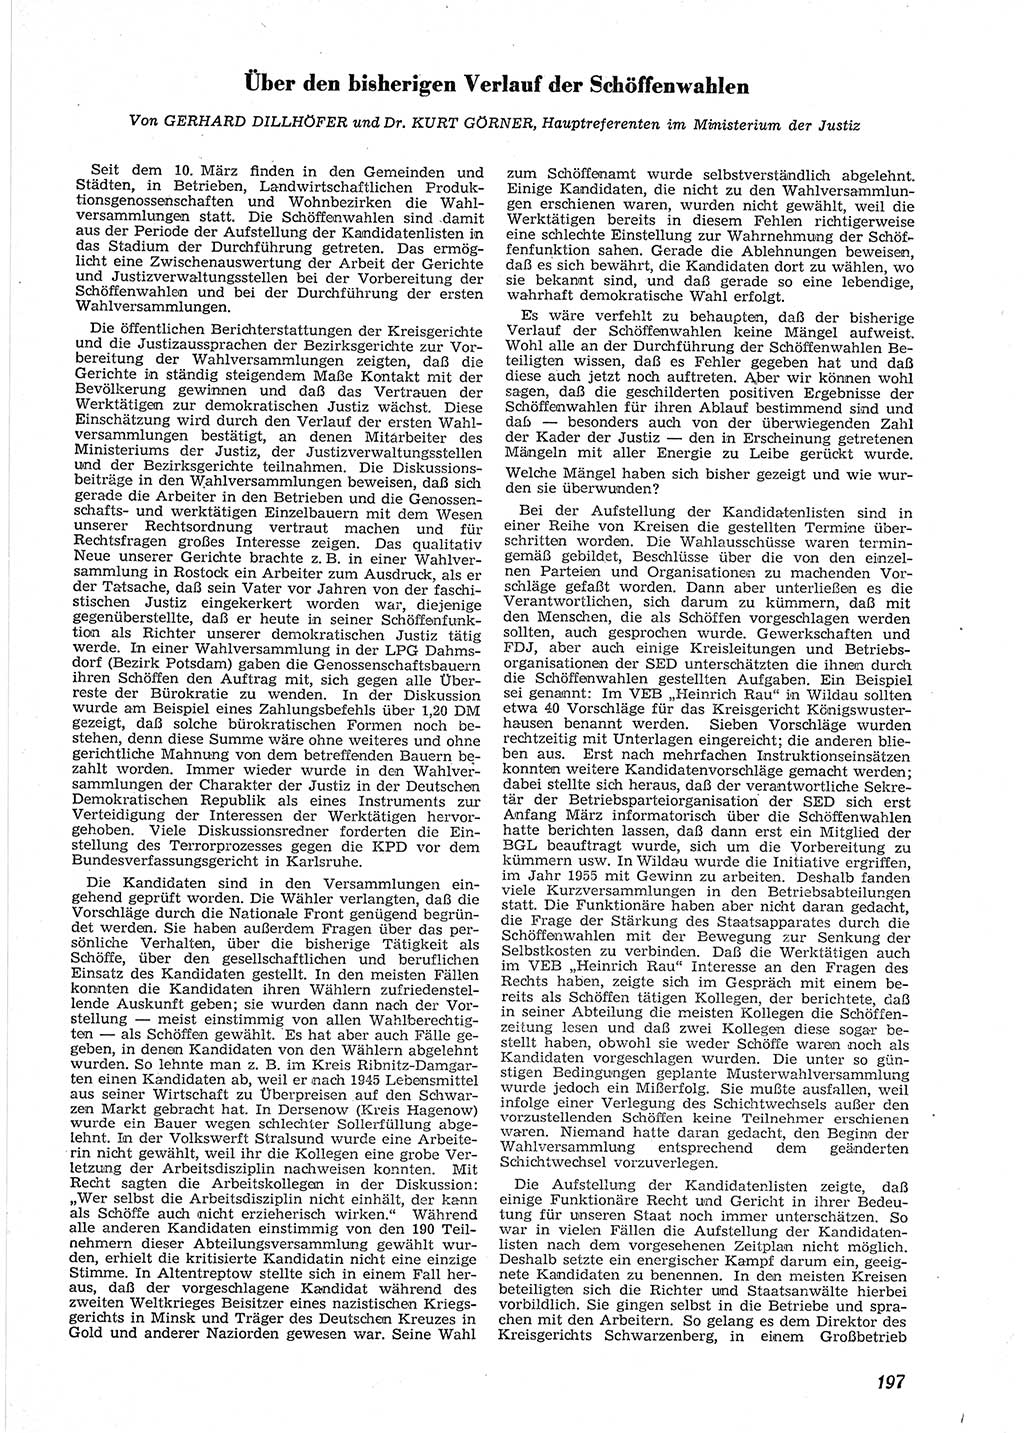 Neue Justiz (NJ), Zeitschrift für Recht und Rechtswissenschaft [Deutsche Demokratische Republik (DDR)], 9. Jahrgang 1955, Seite 197 (NJ DDR 1955, S. 197)